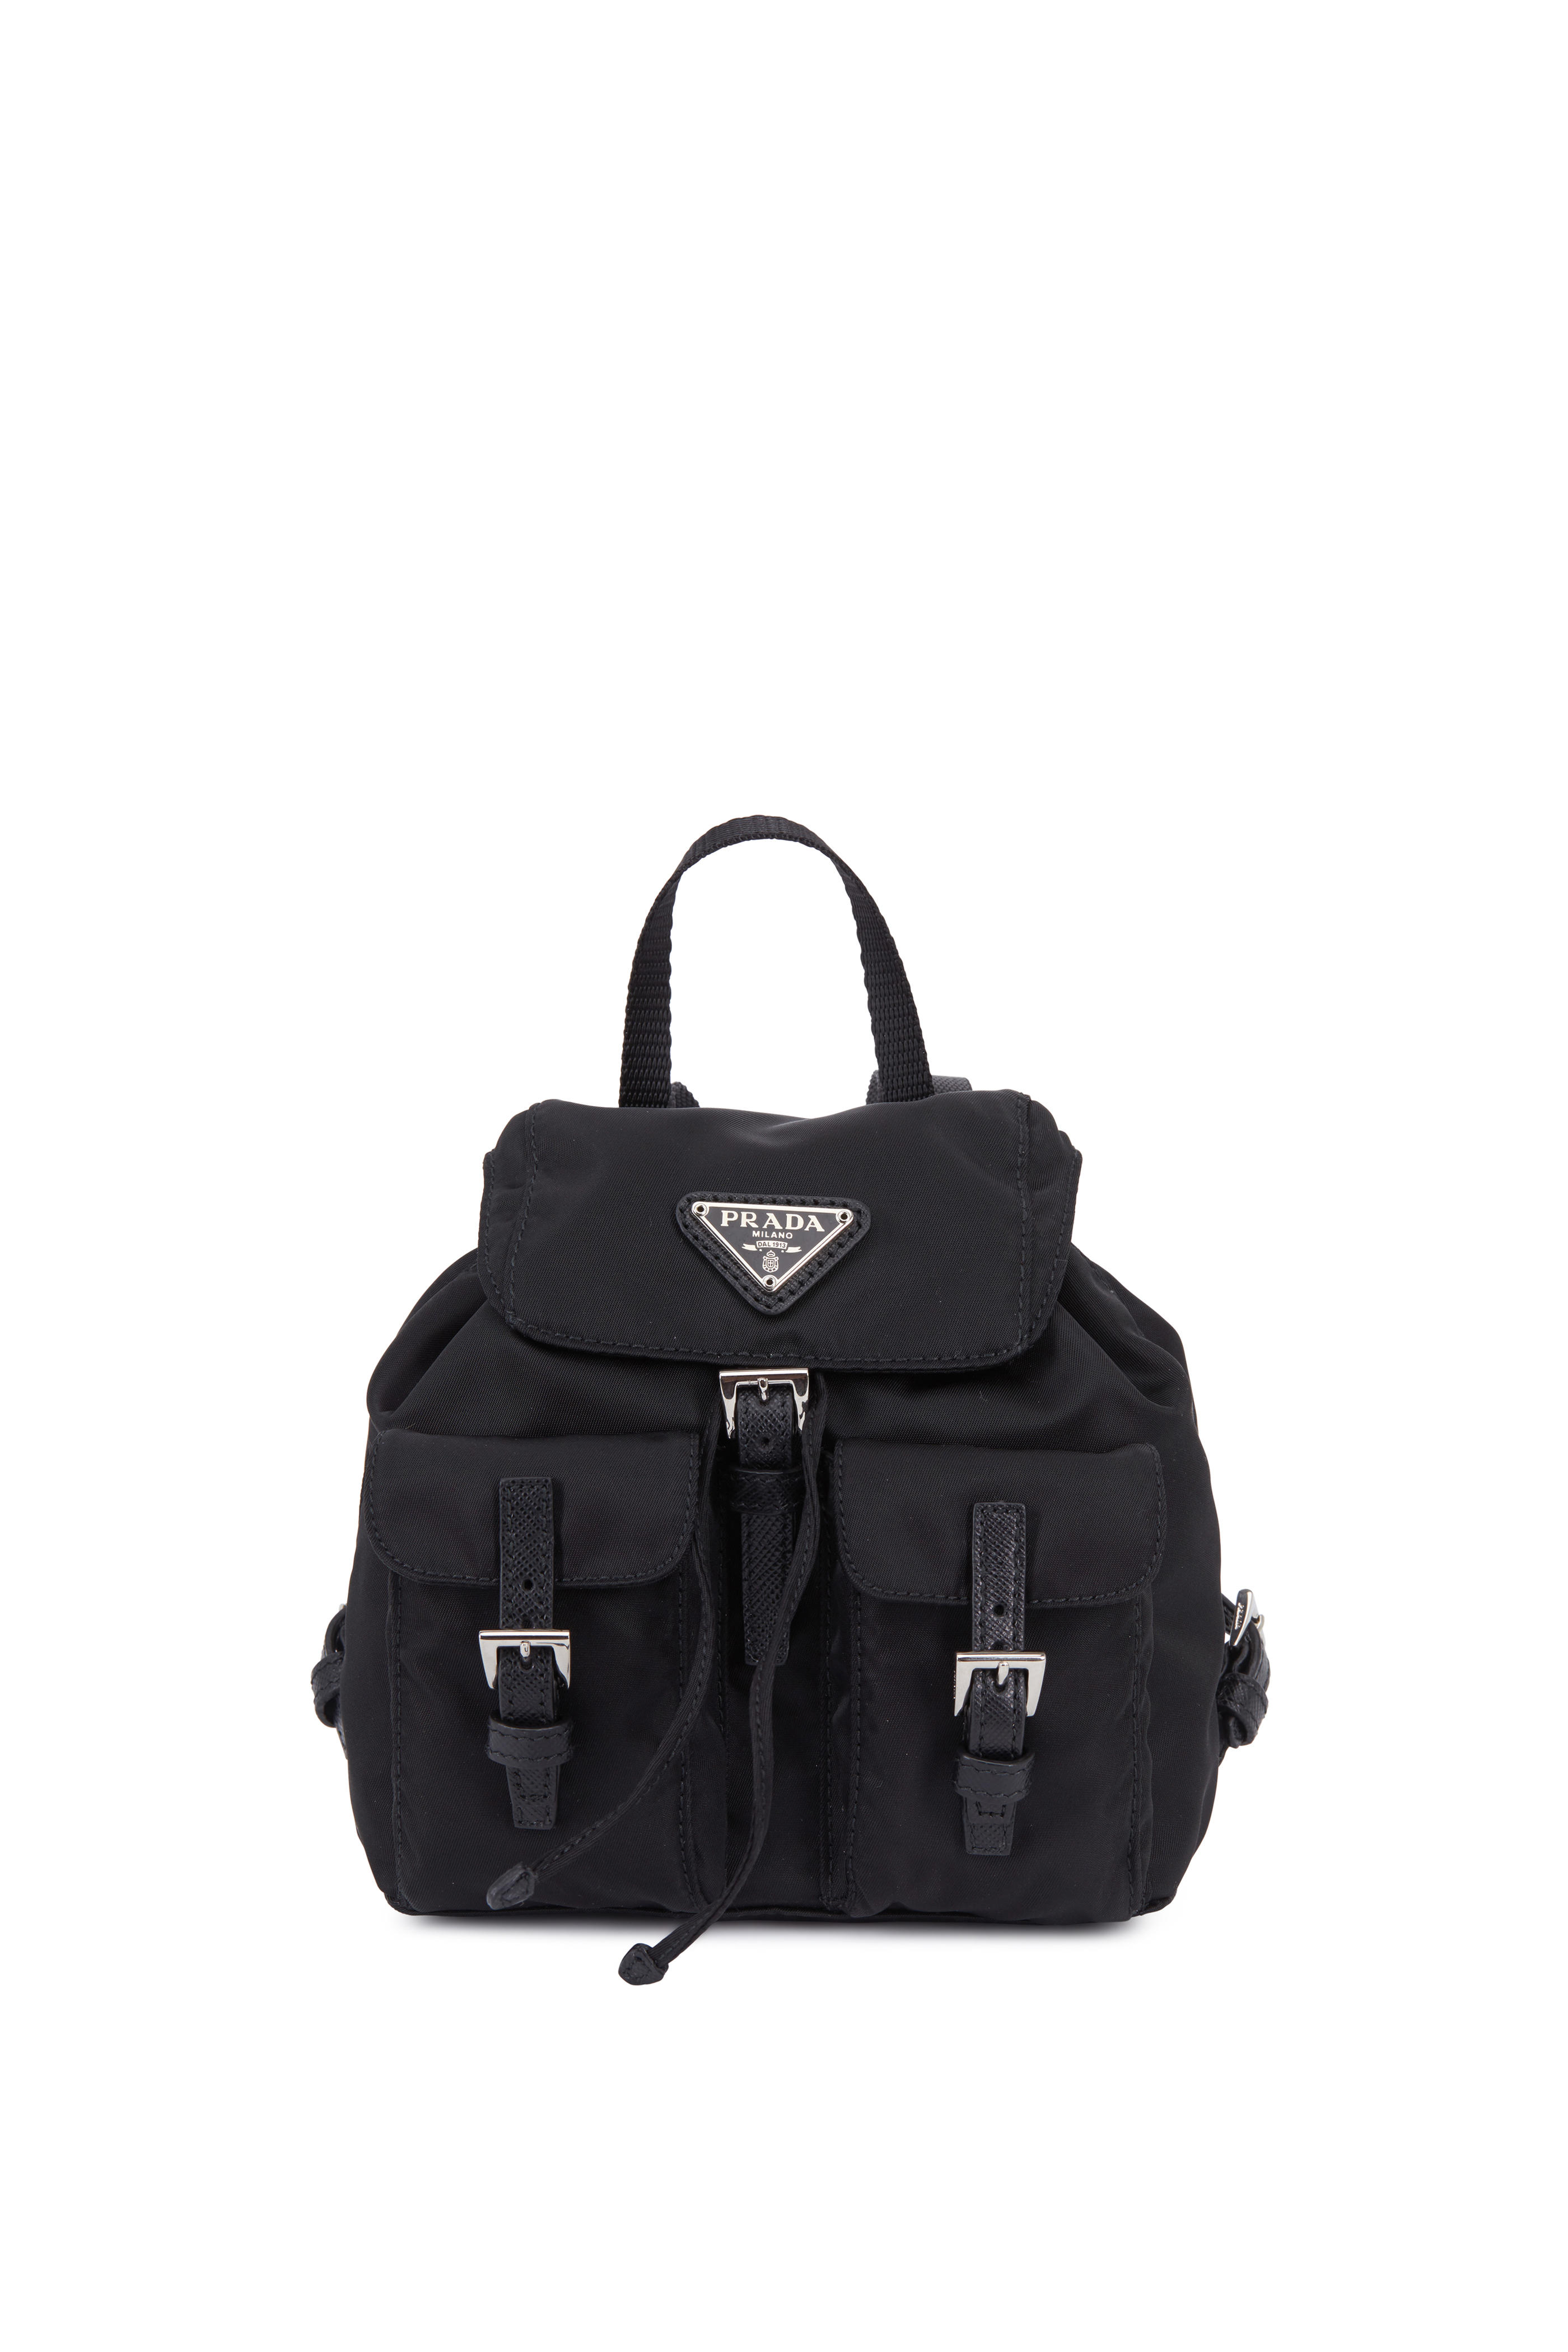 prada black mini backpack